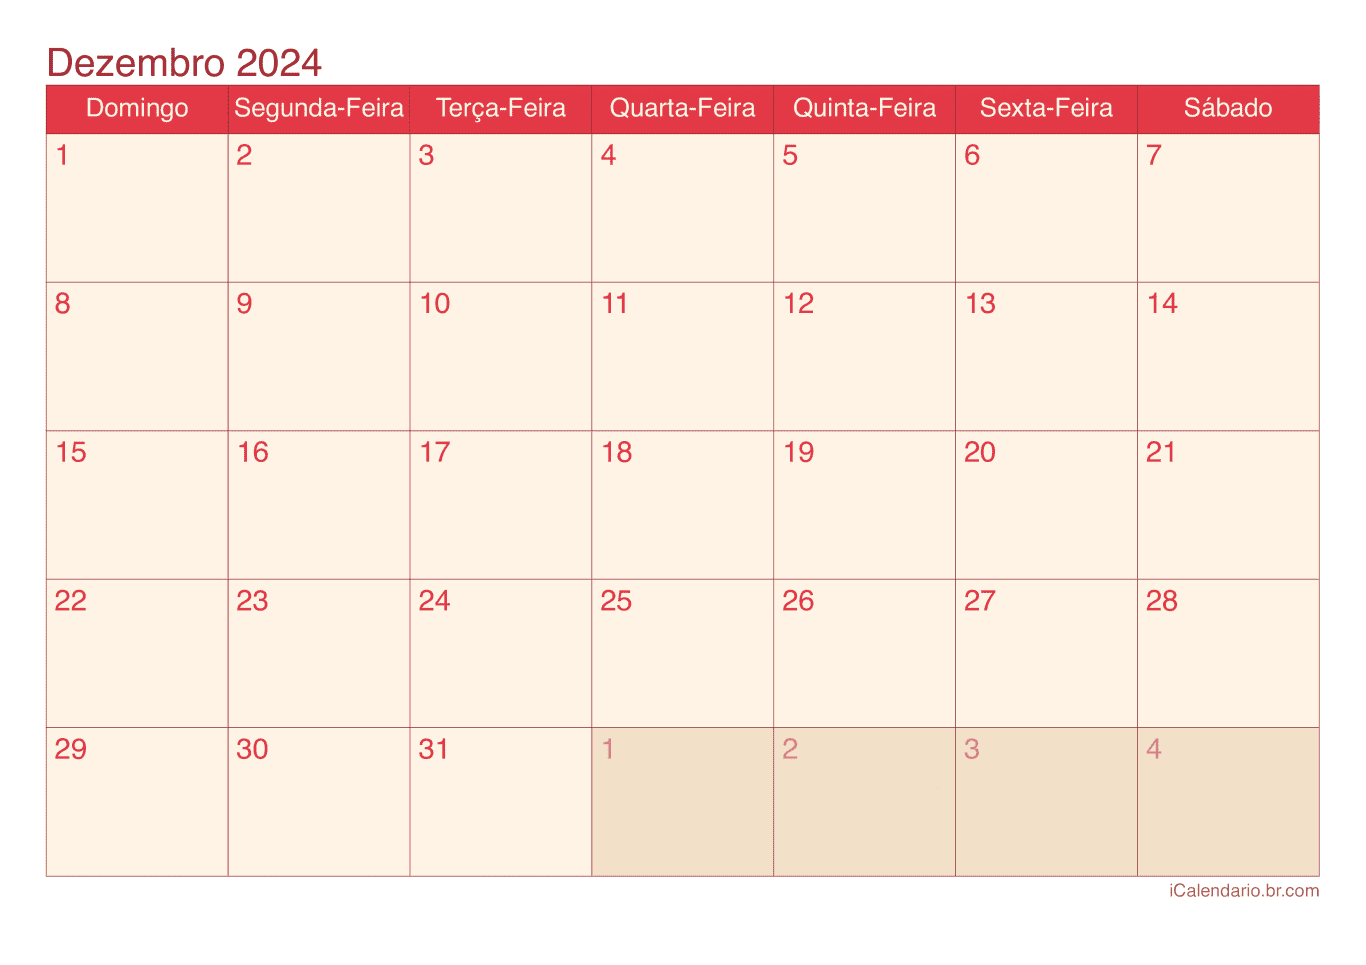 Calendário de dezembro 2024 - Cherry